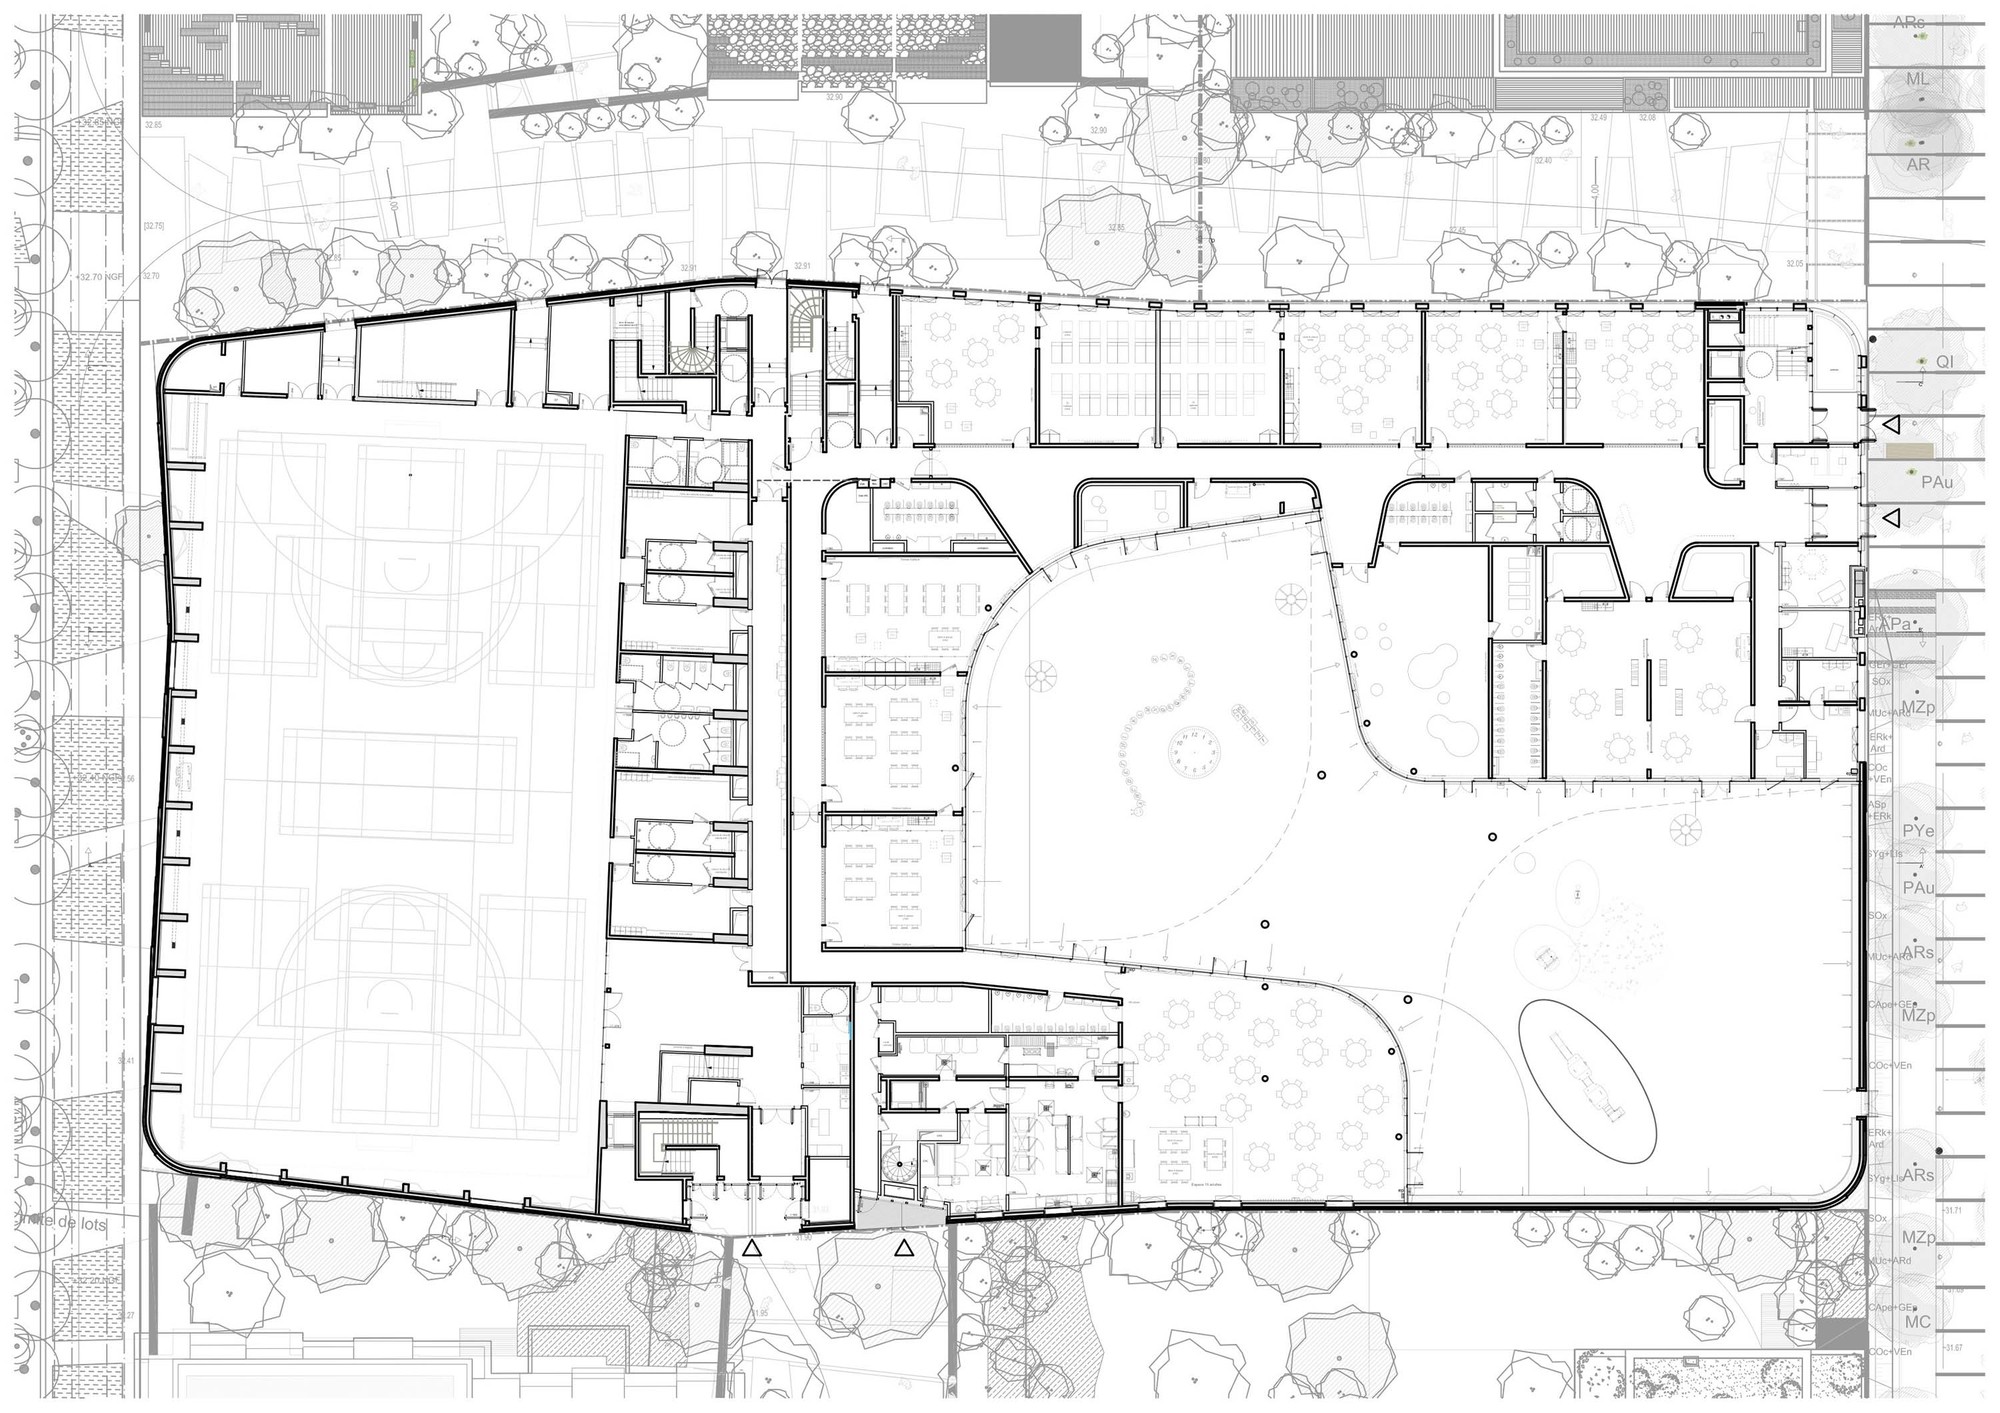 پلان همکف,نقشه مدرسه ابتدایی,پلان معماری مدرسه ابتدایی,نقشه معماری